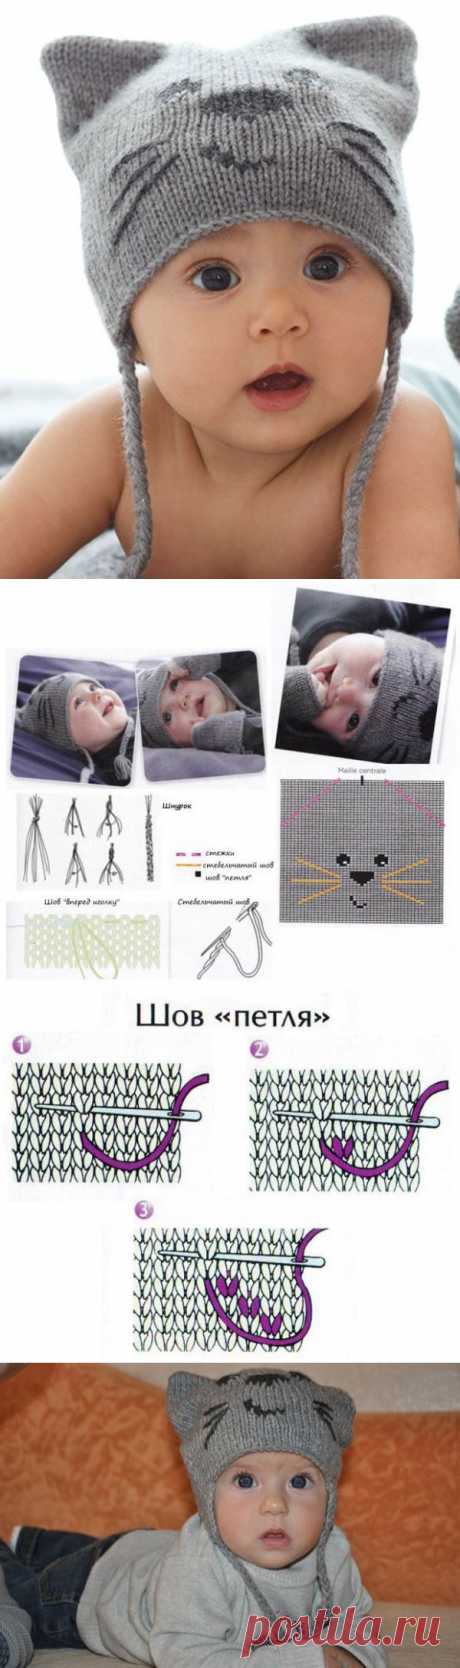 Стильная шапка с мордочкой котика и митенки для малыша вязаные спицами | Strikky.ru